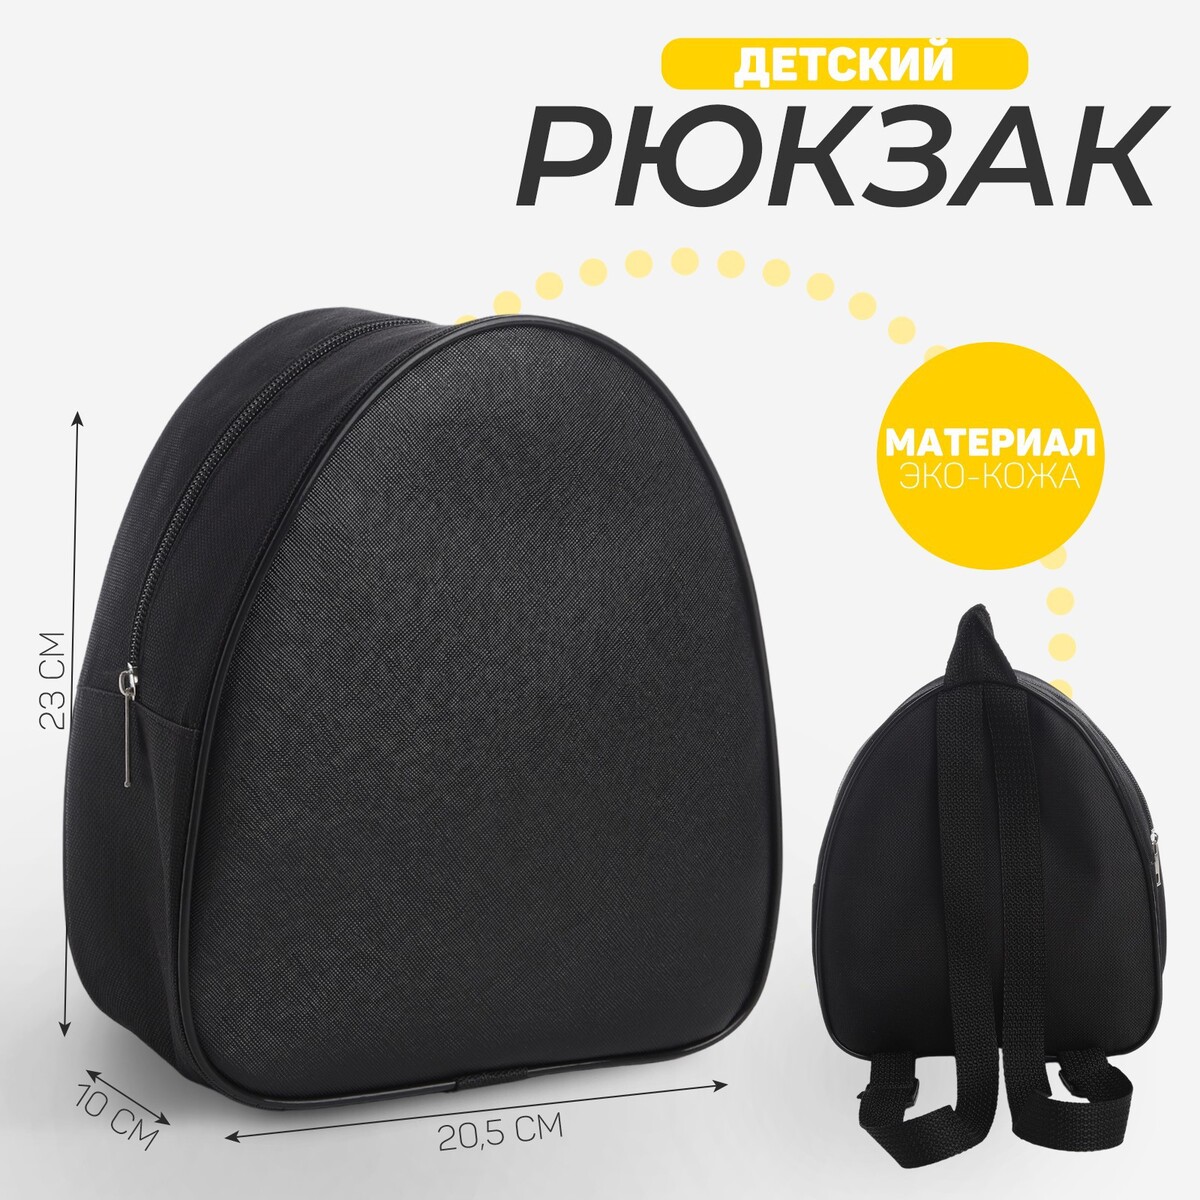 Рюкзак детский для мальчика, 23х20,5 см, отдел на молнии, цвет черный